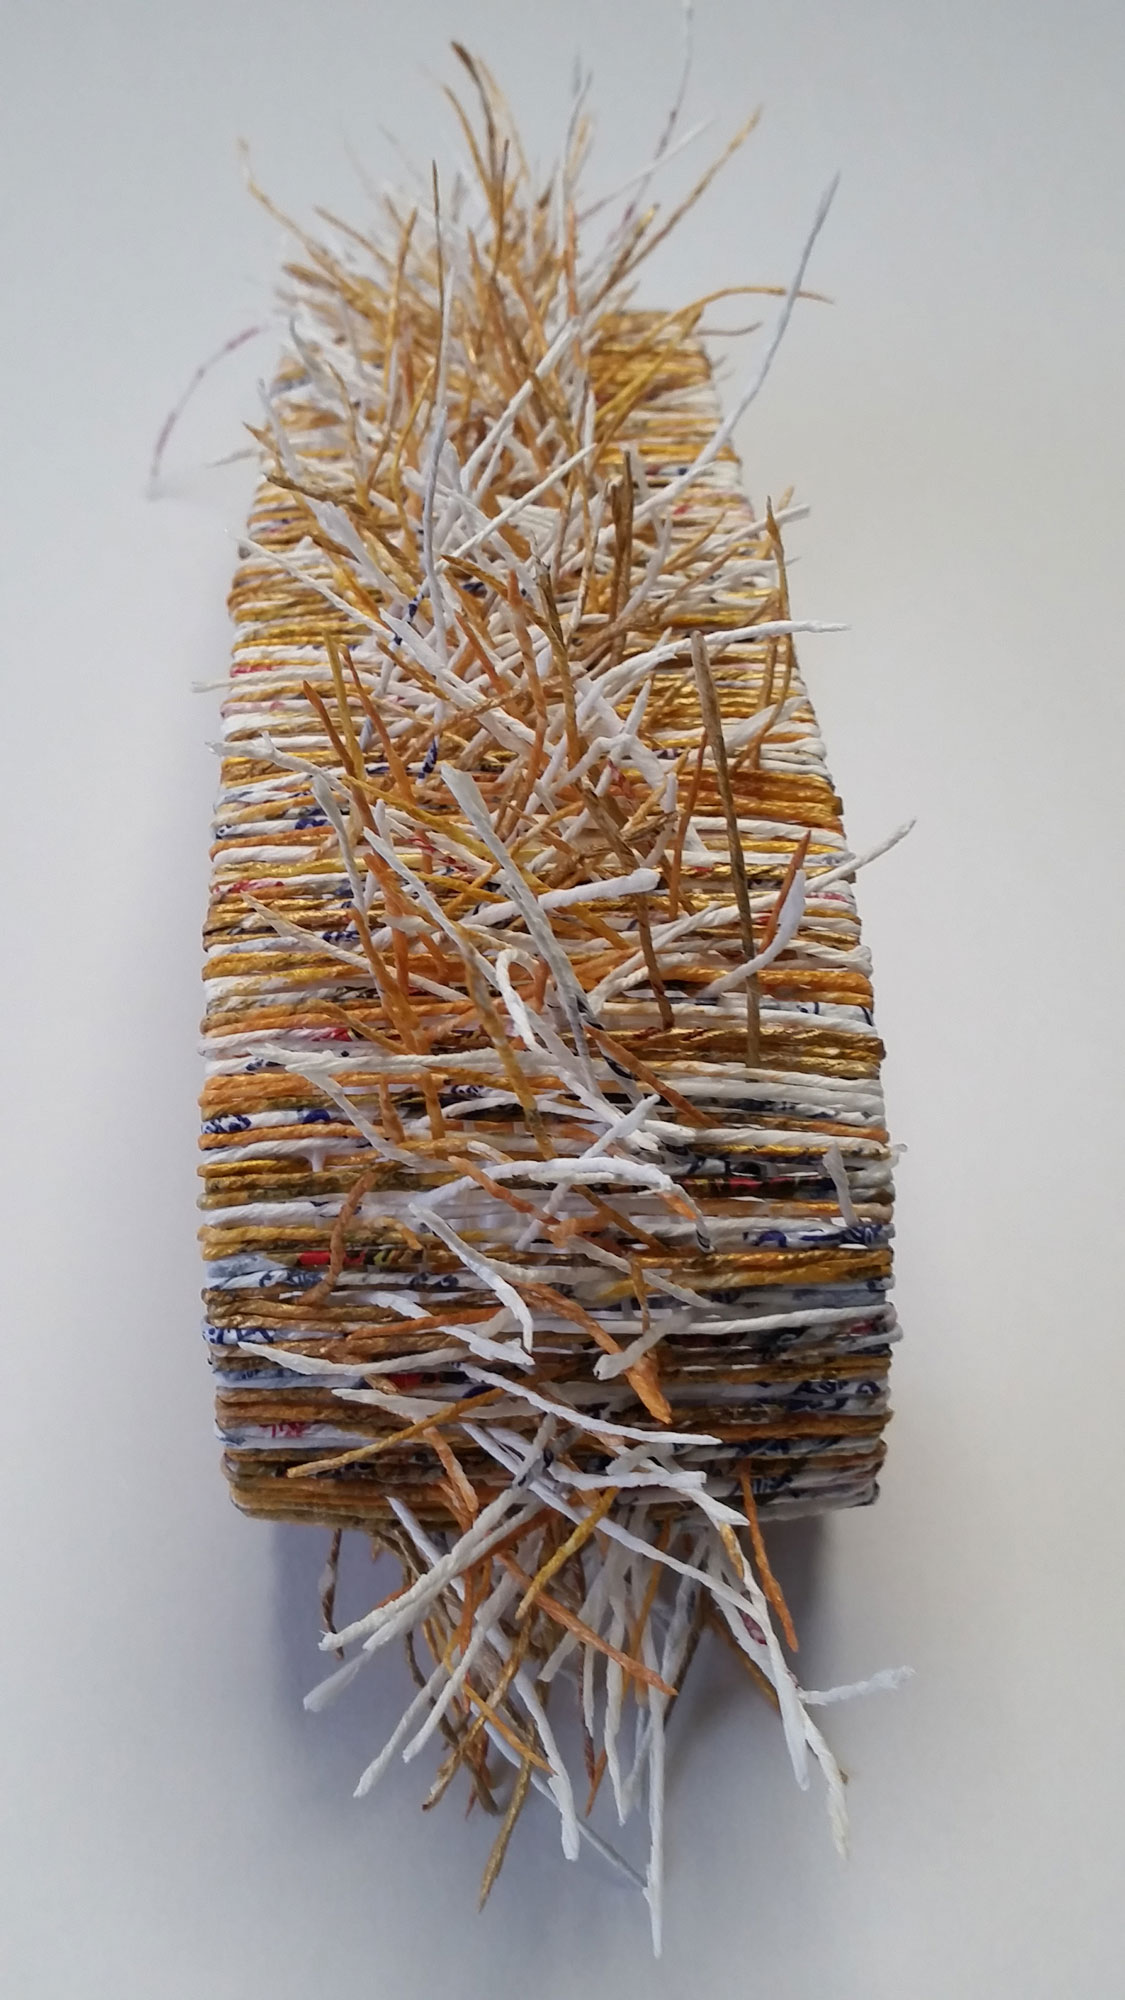 Boucle-ruban - Papier d'oranges, peinture, structure plastique - 30 x 8 cm - 2018